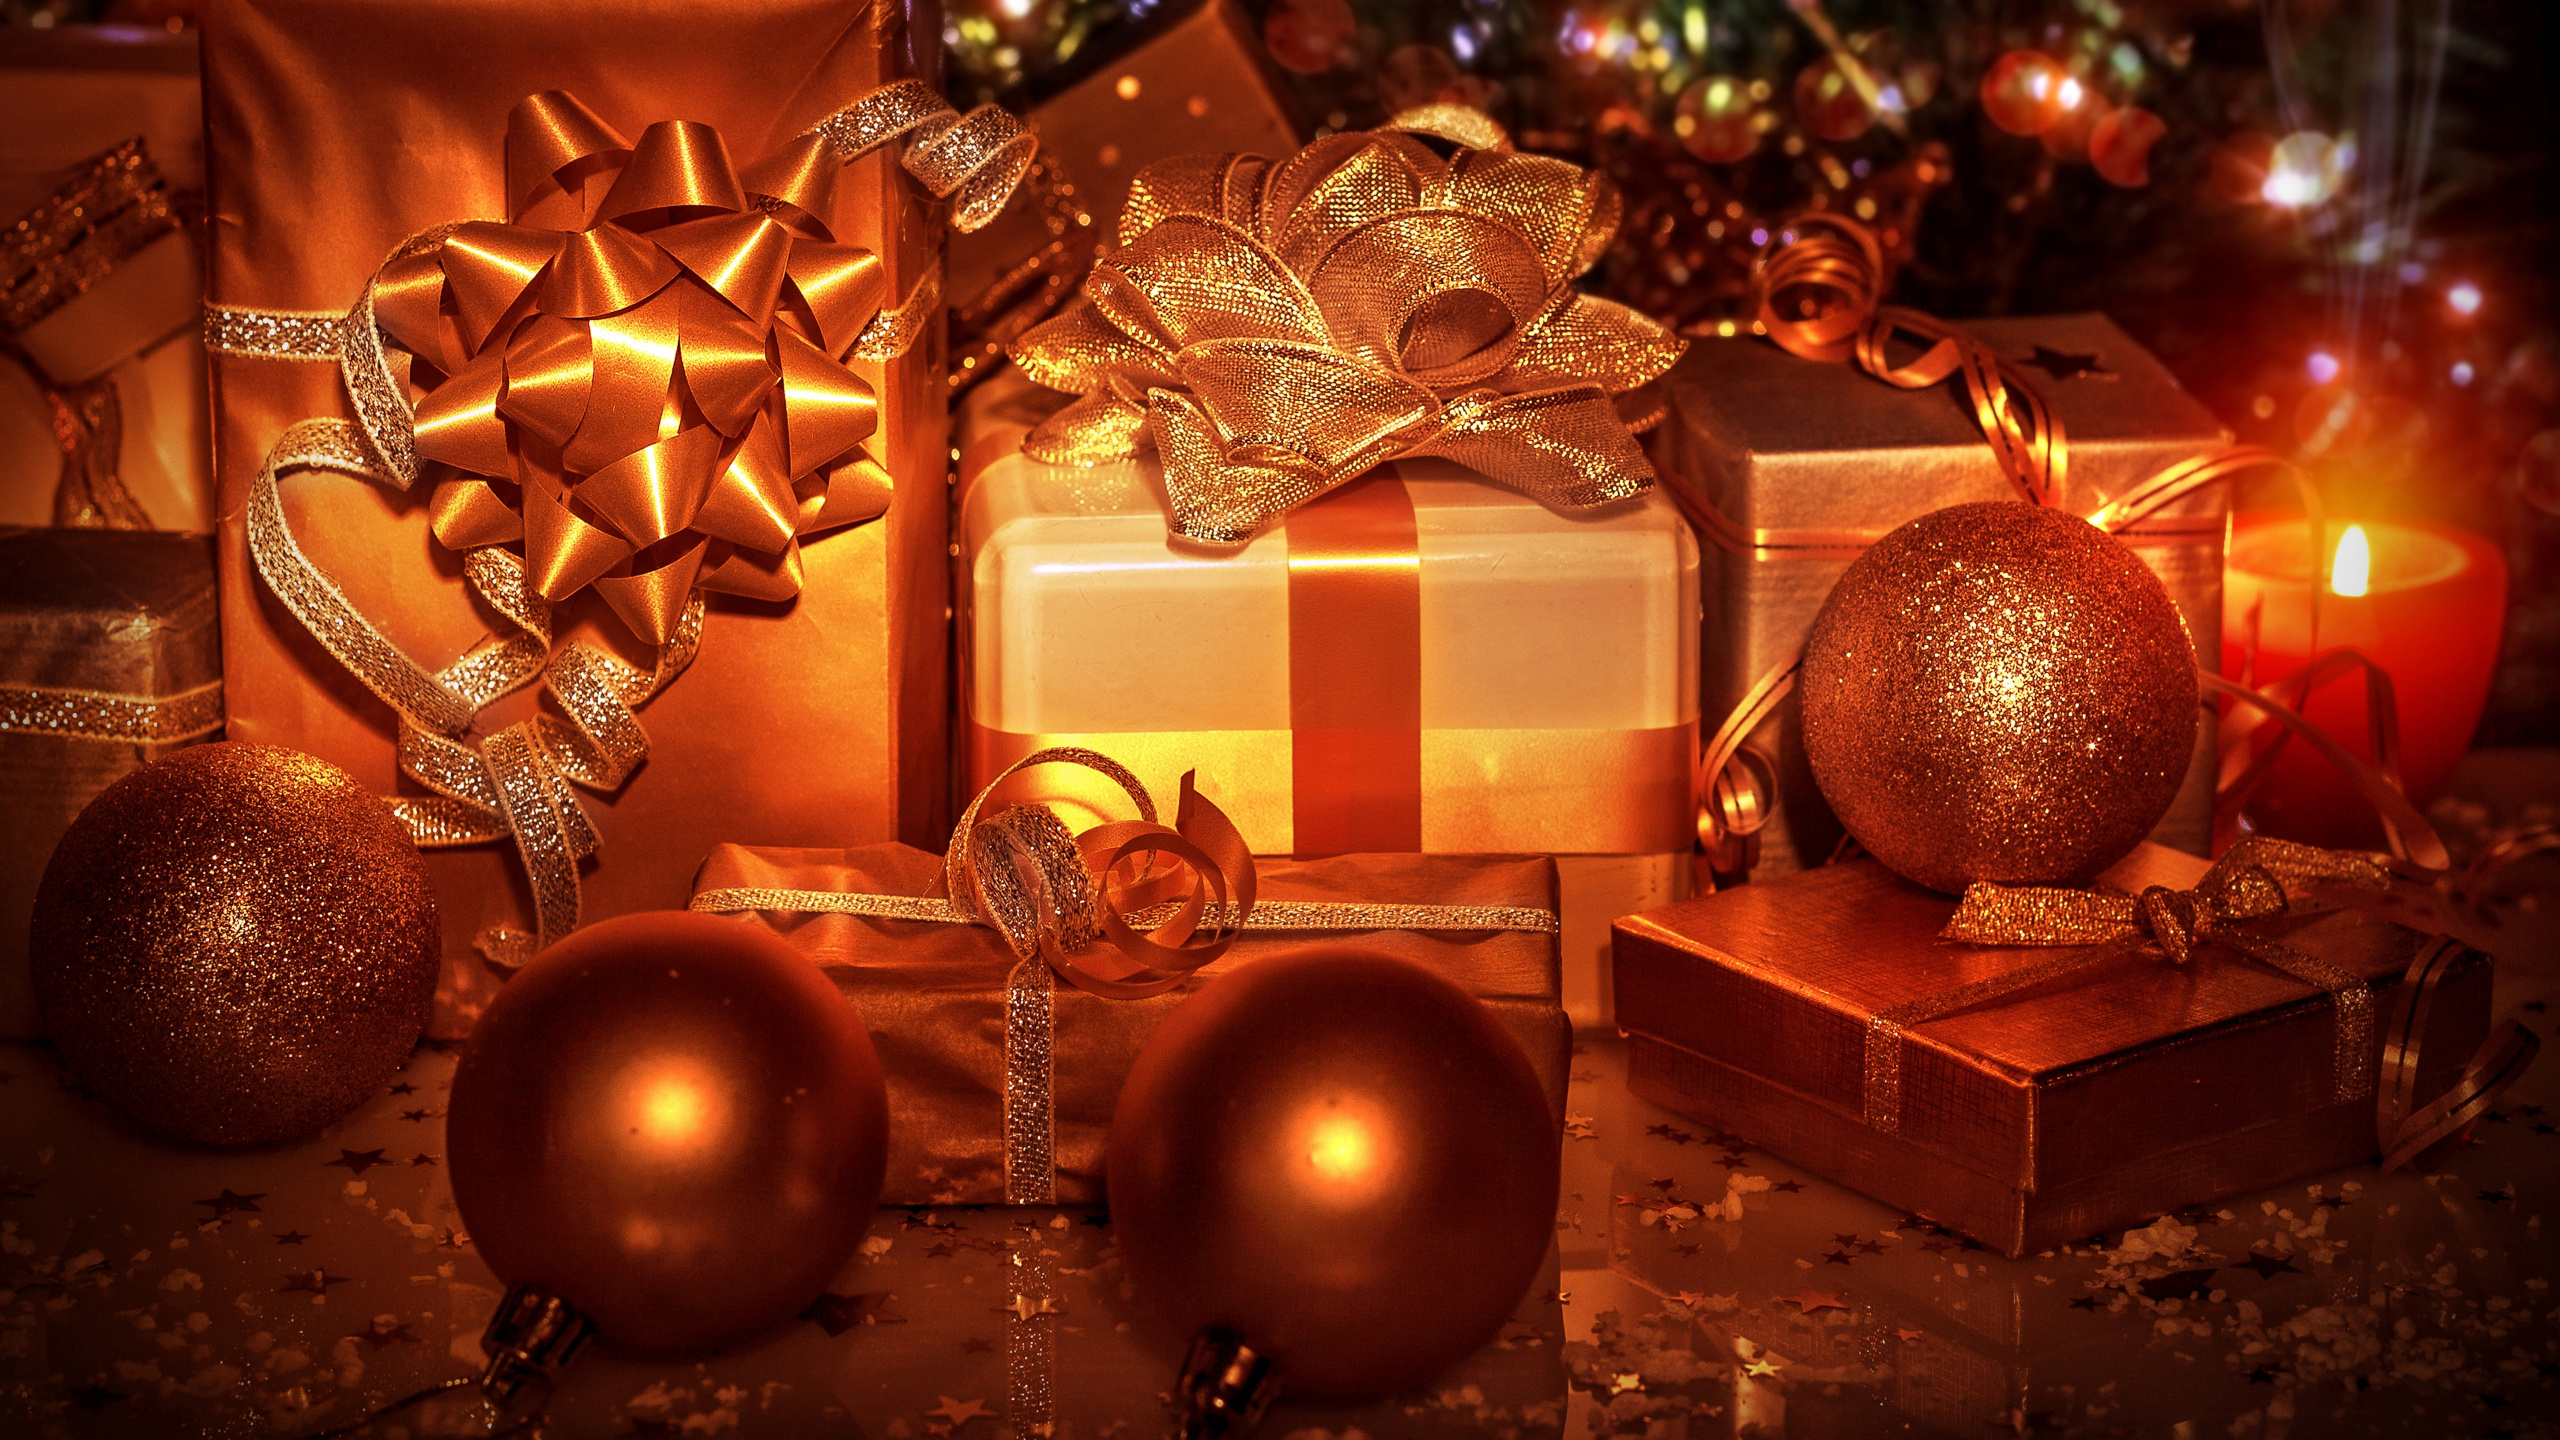 Le Jour De Noël, Ornement de Noël, Arbre de Noël, Nouvelle Année, Décoration de Noël. Wallpaper in 2560x1440 Resolution